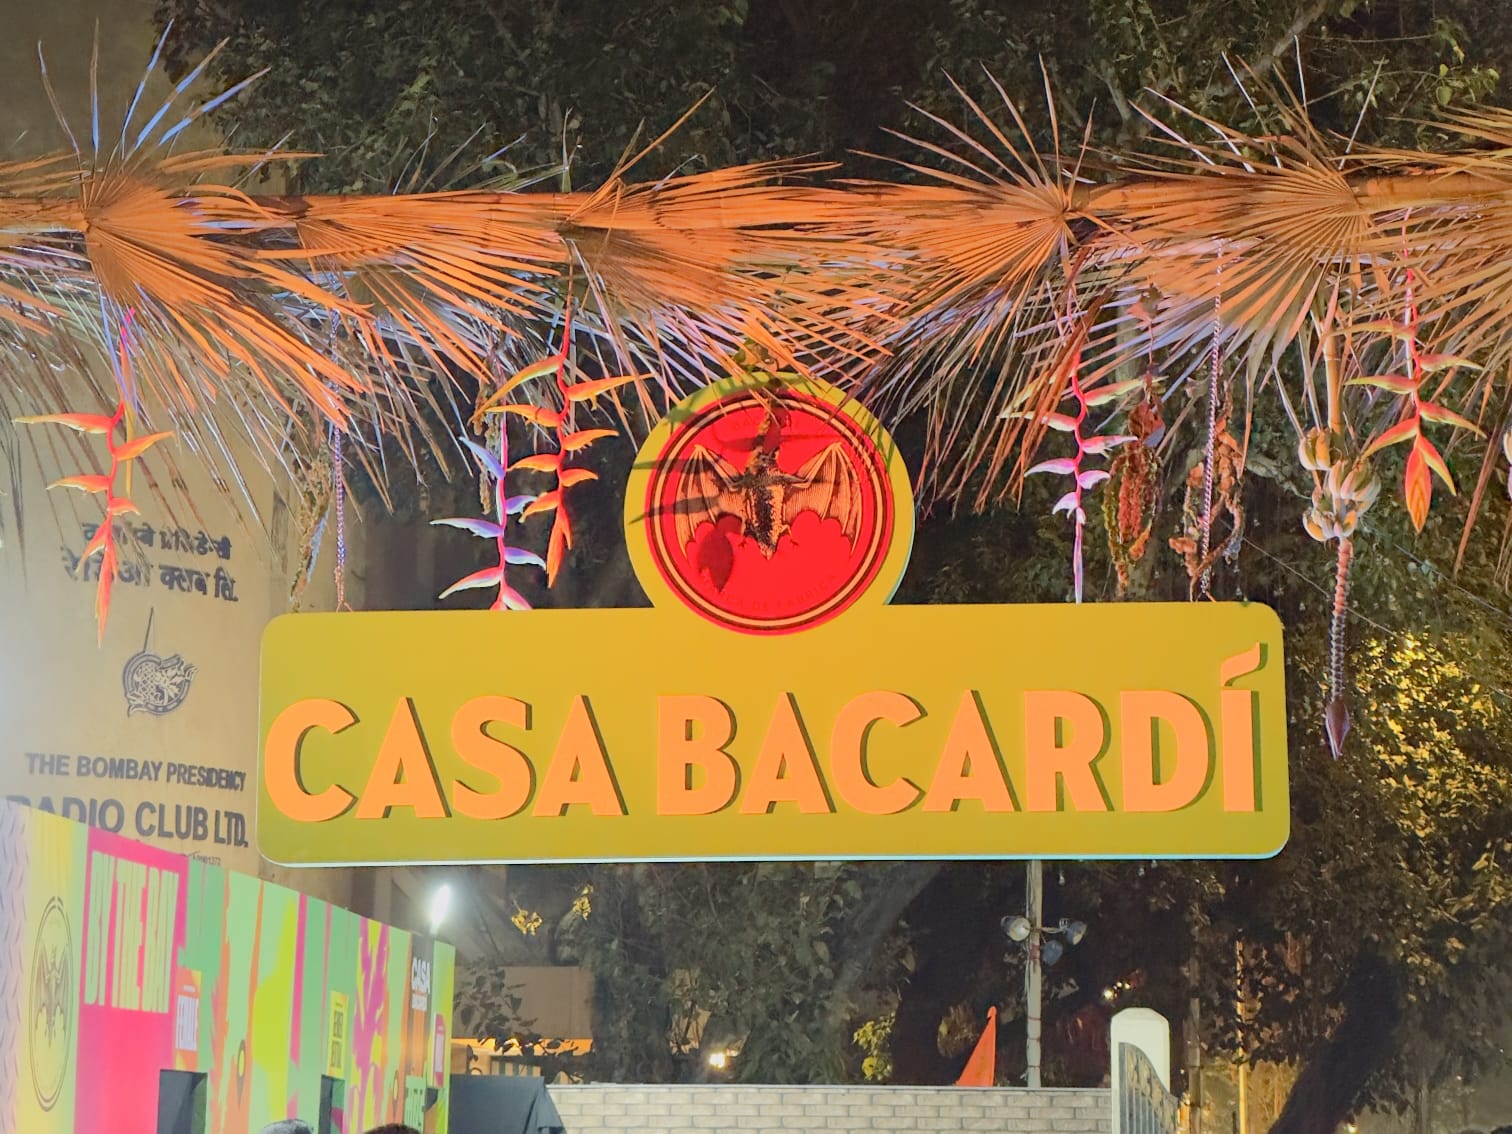 CASA BACARDÍ was hosted by BACARDÍ on 3rd February in Mumbai